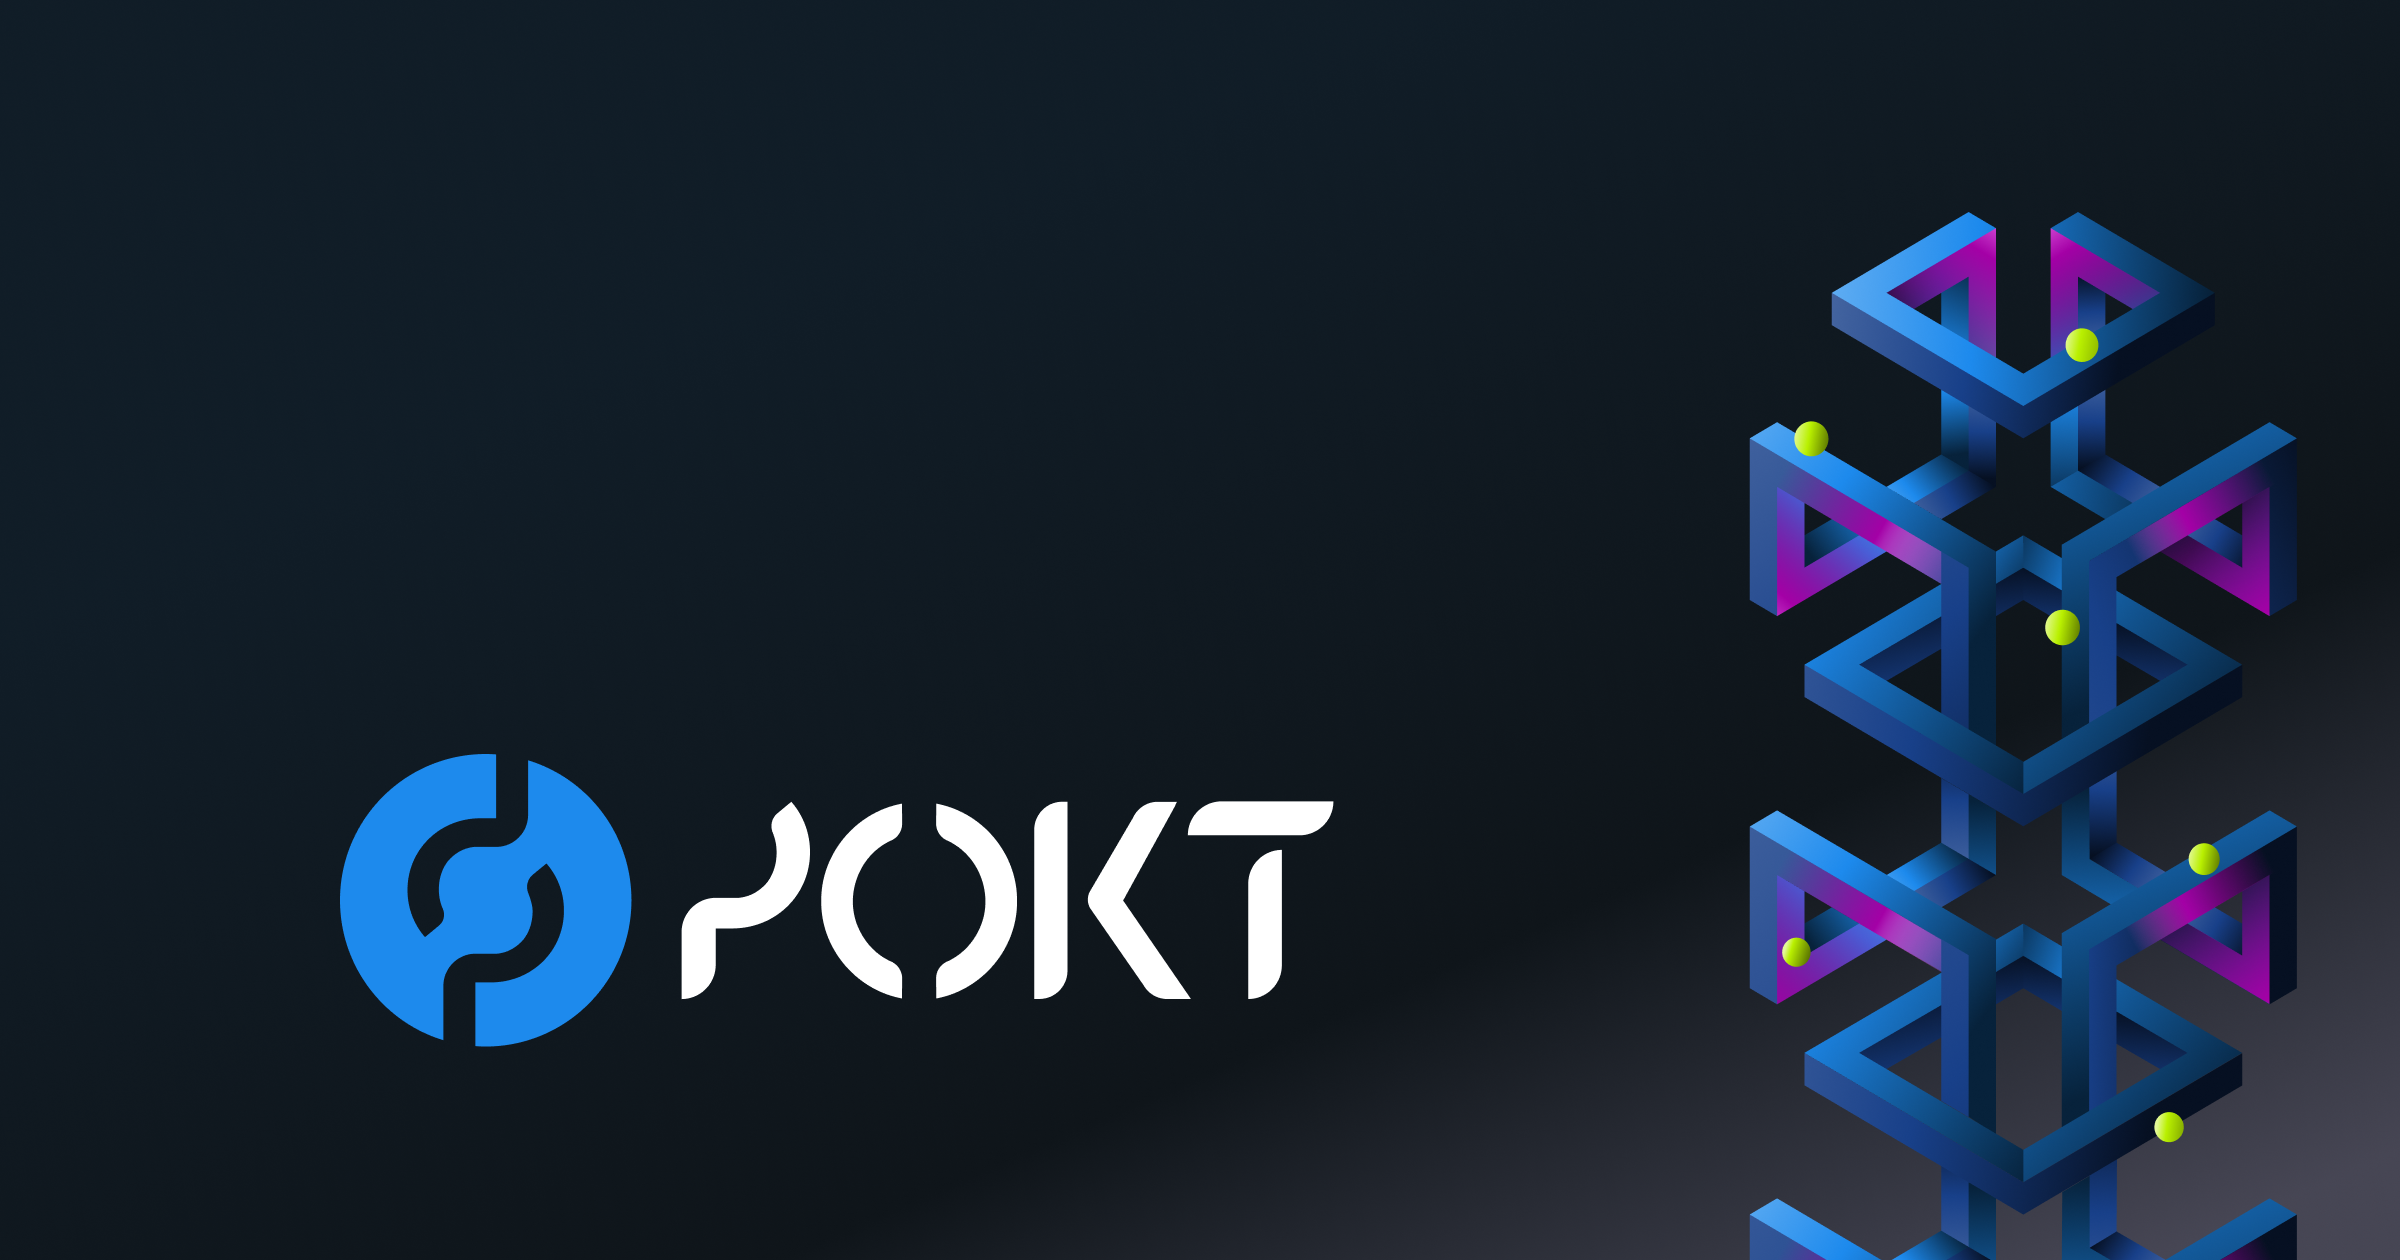 POKT Logo with blue color background